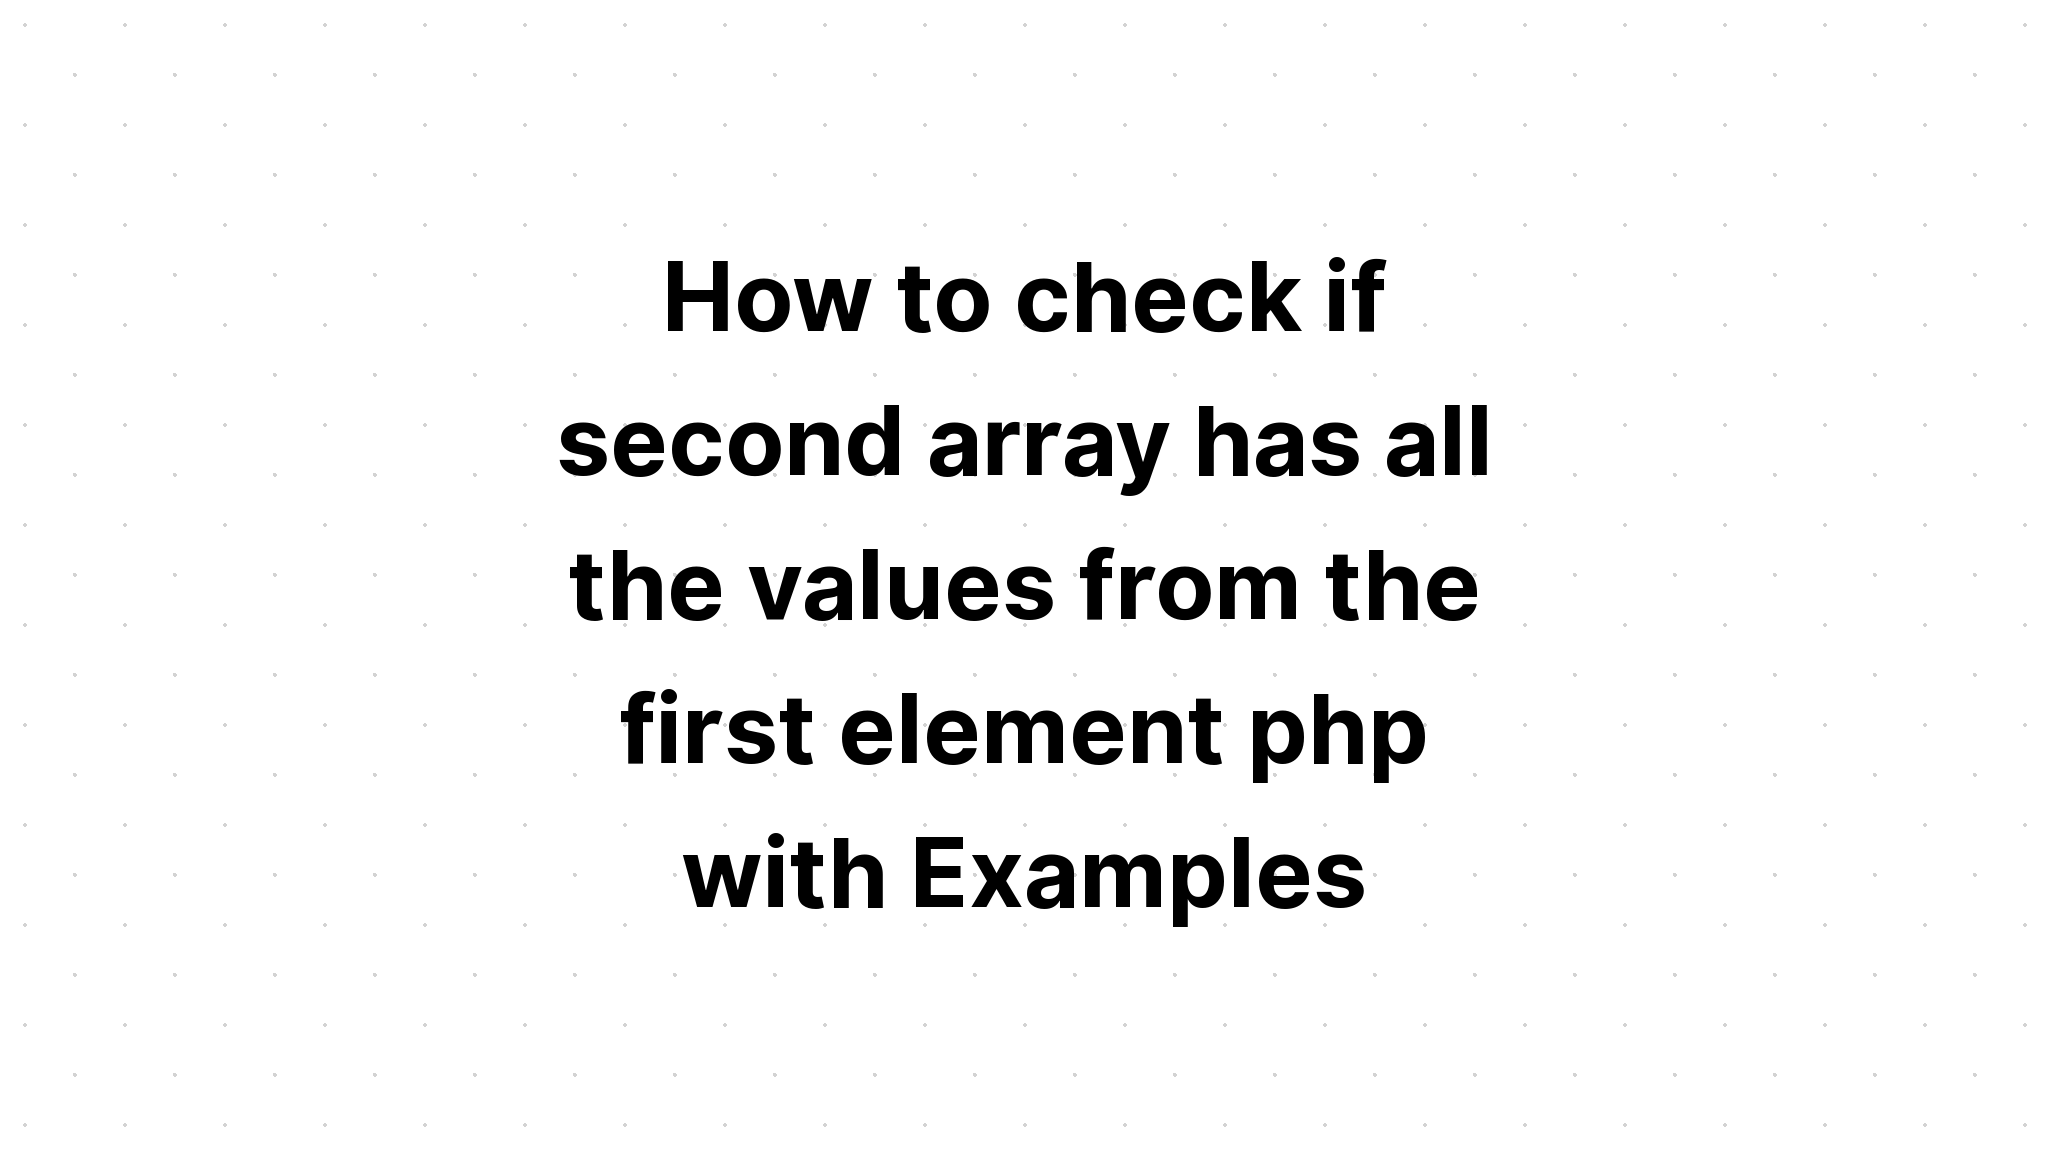 Cách kiểm tra xem mảng thứ hai có tất cả các giá trị từ phần tử đầu tiên php hay không với các ví dụ